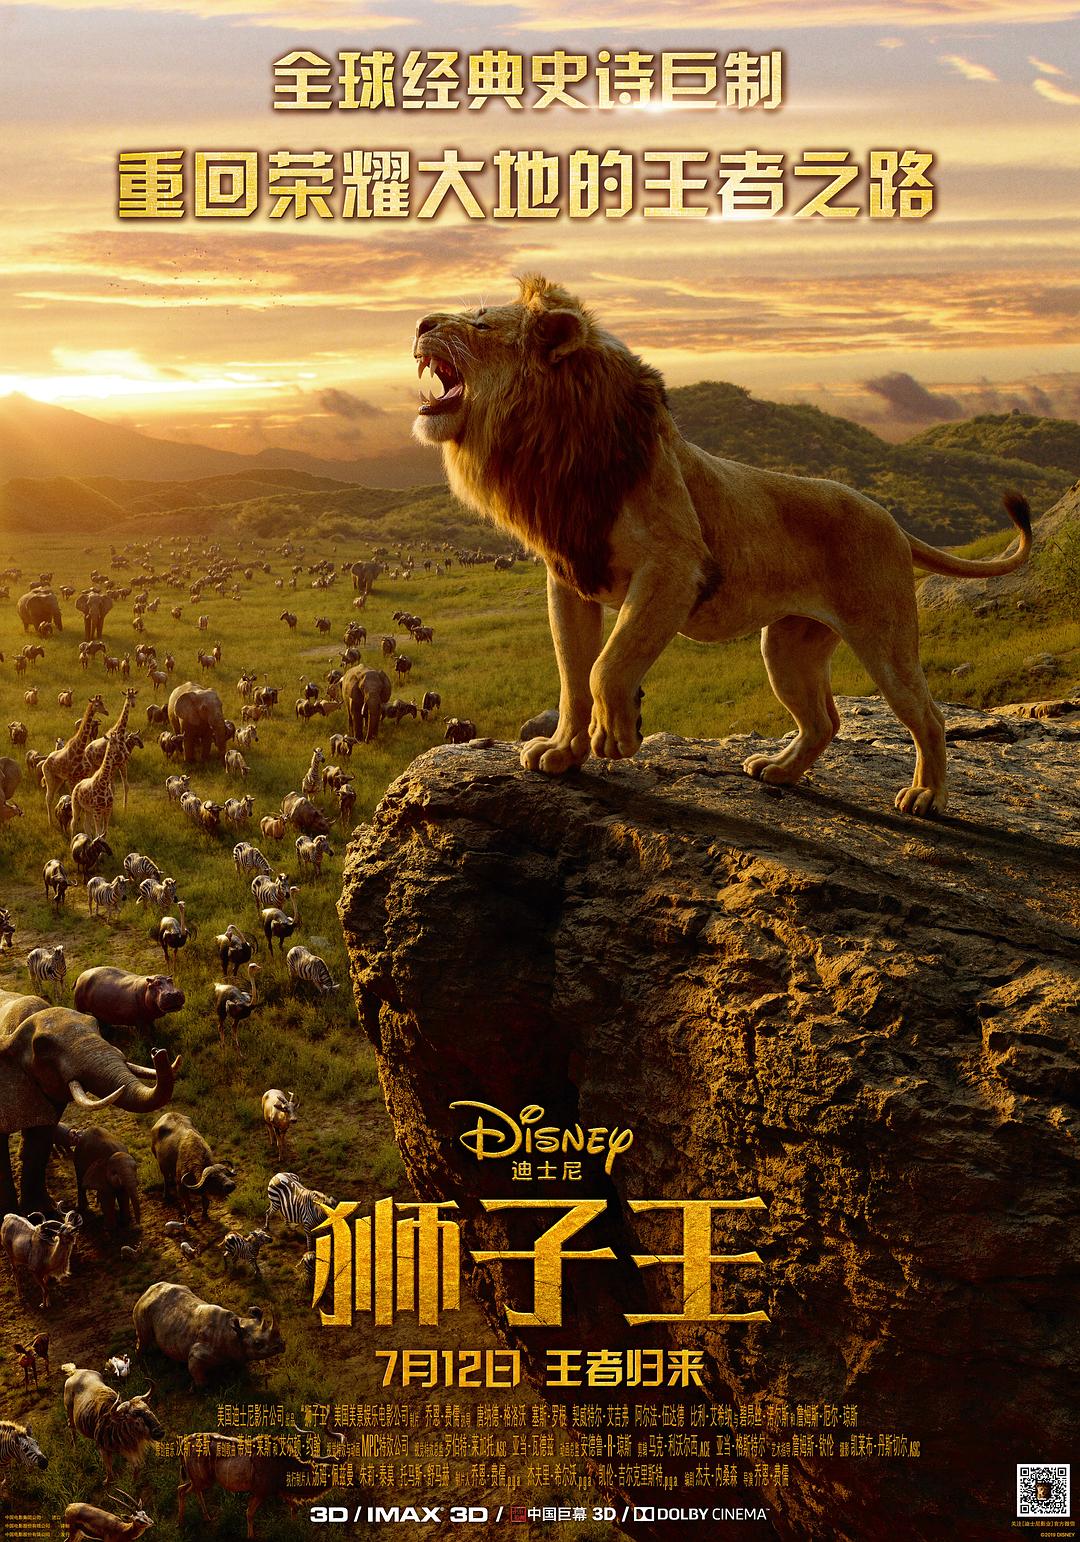 ʨ/ʨ˰ The.Lion.King.2019.1080p.BluRay.x264.TrueHD.7.1.Atmos-SWTYBLZ 12.21GB-1.png